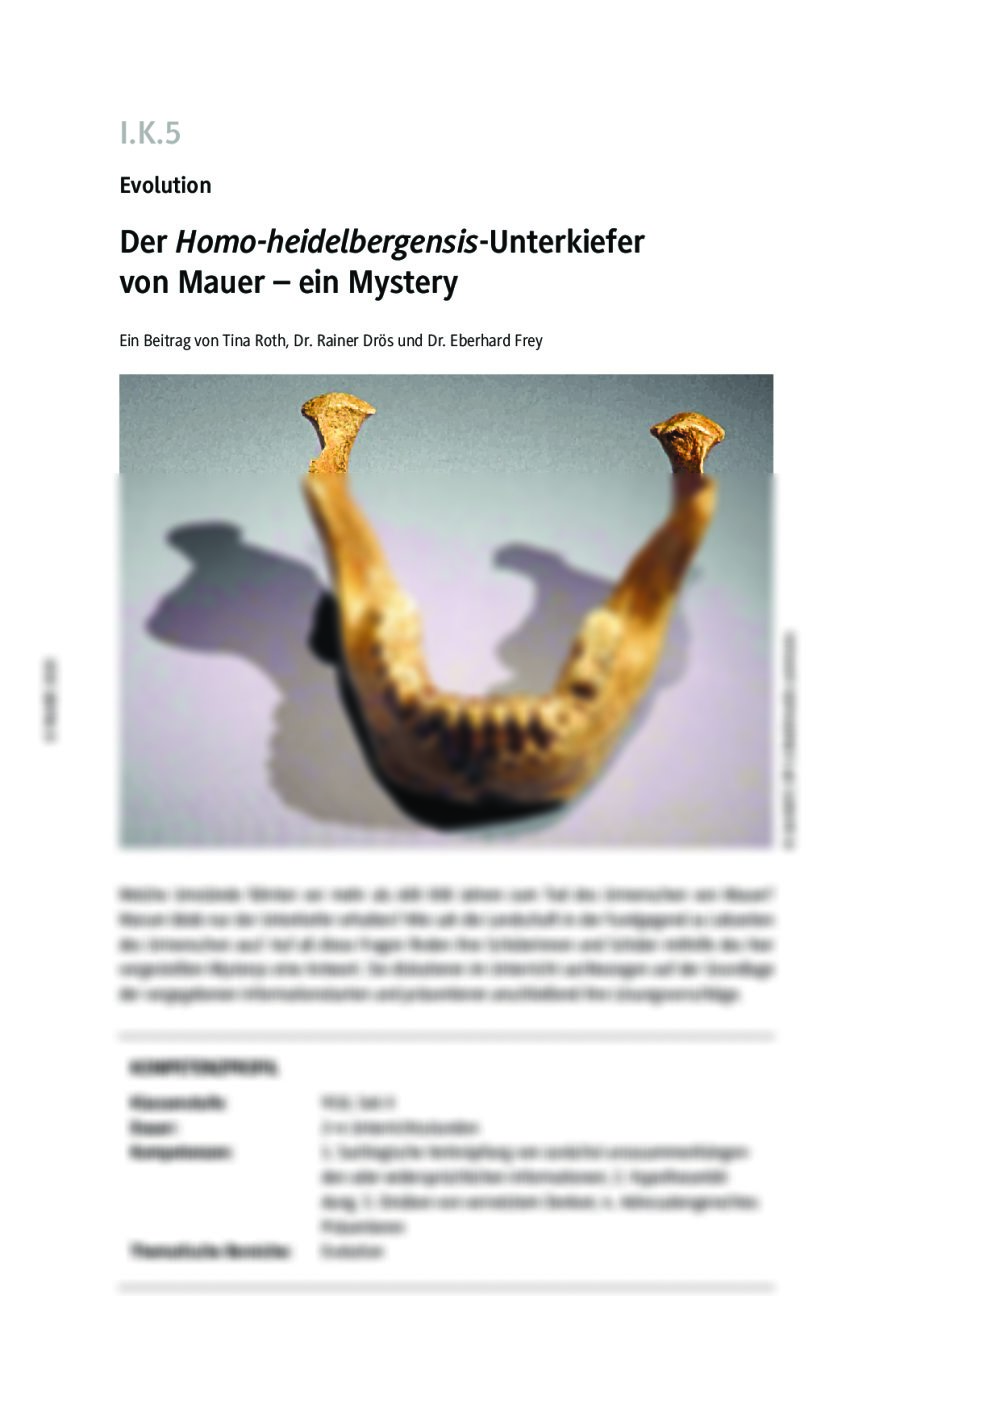 Der Homo-heidelbergensis-Unterkiefer von Mauer - Seite 1